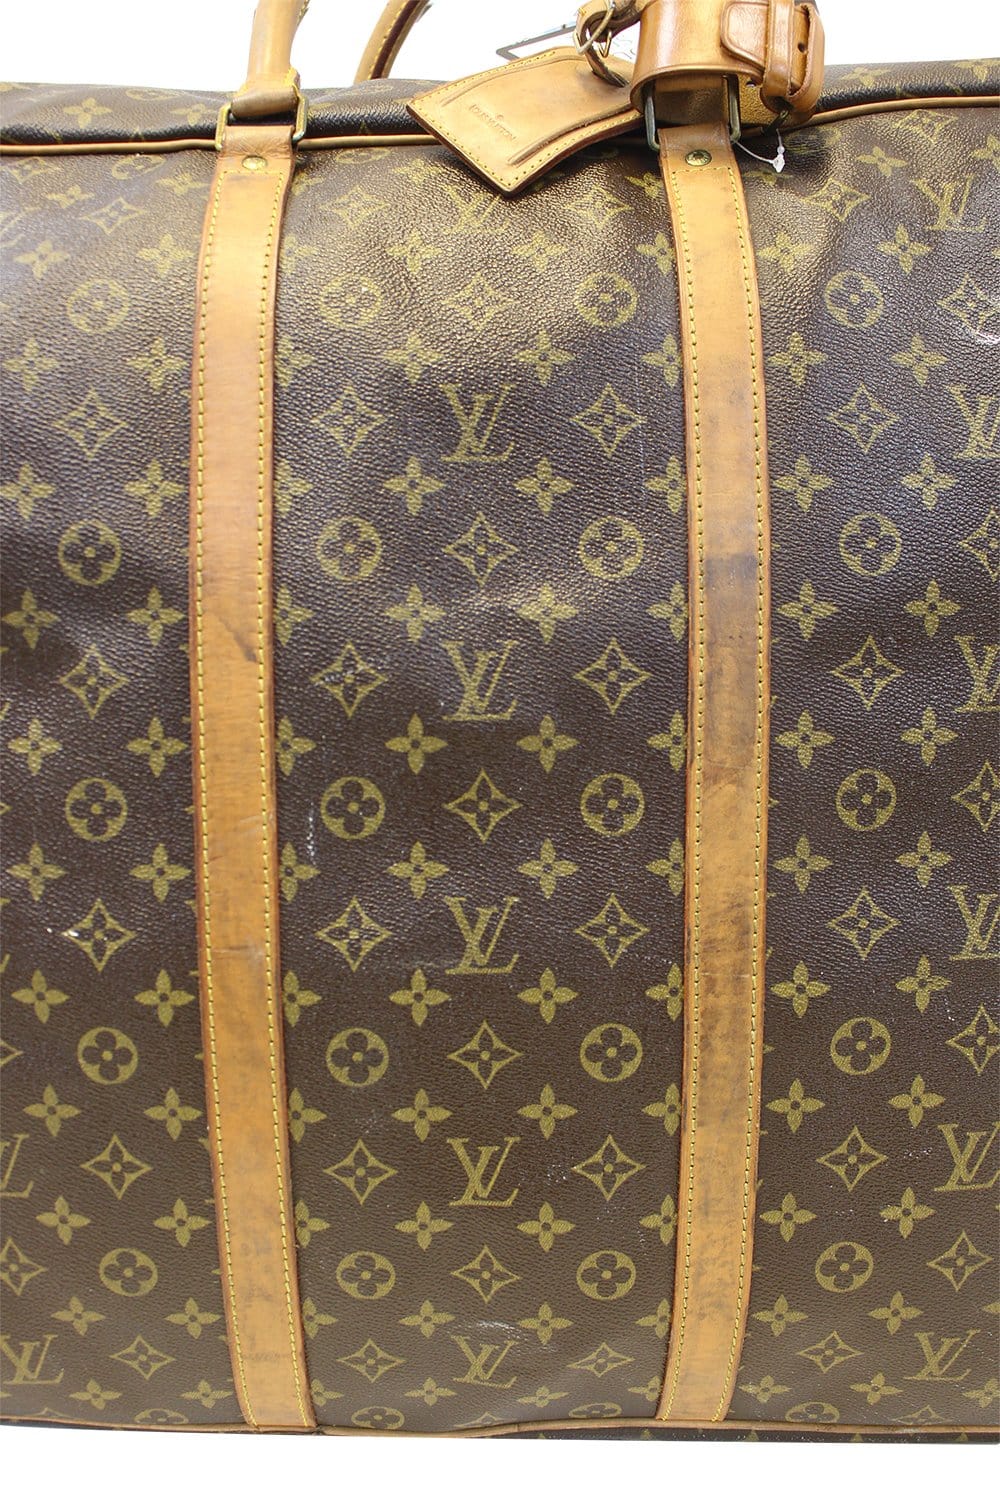 Lot 270 - Medium Rare X Louis Vuitton Stars Monogram